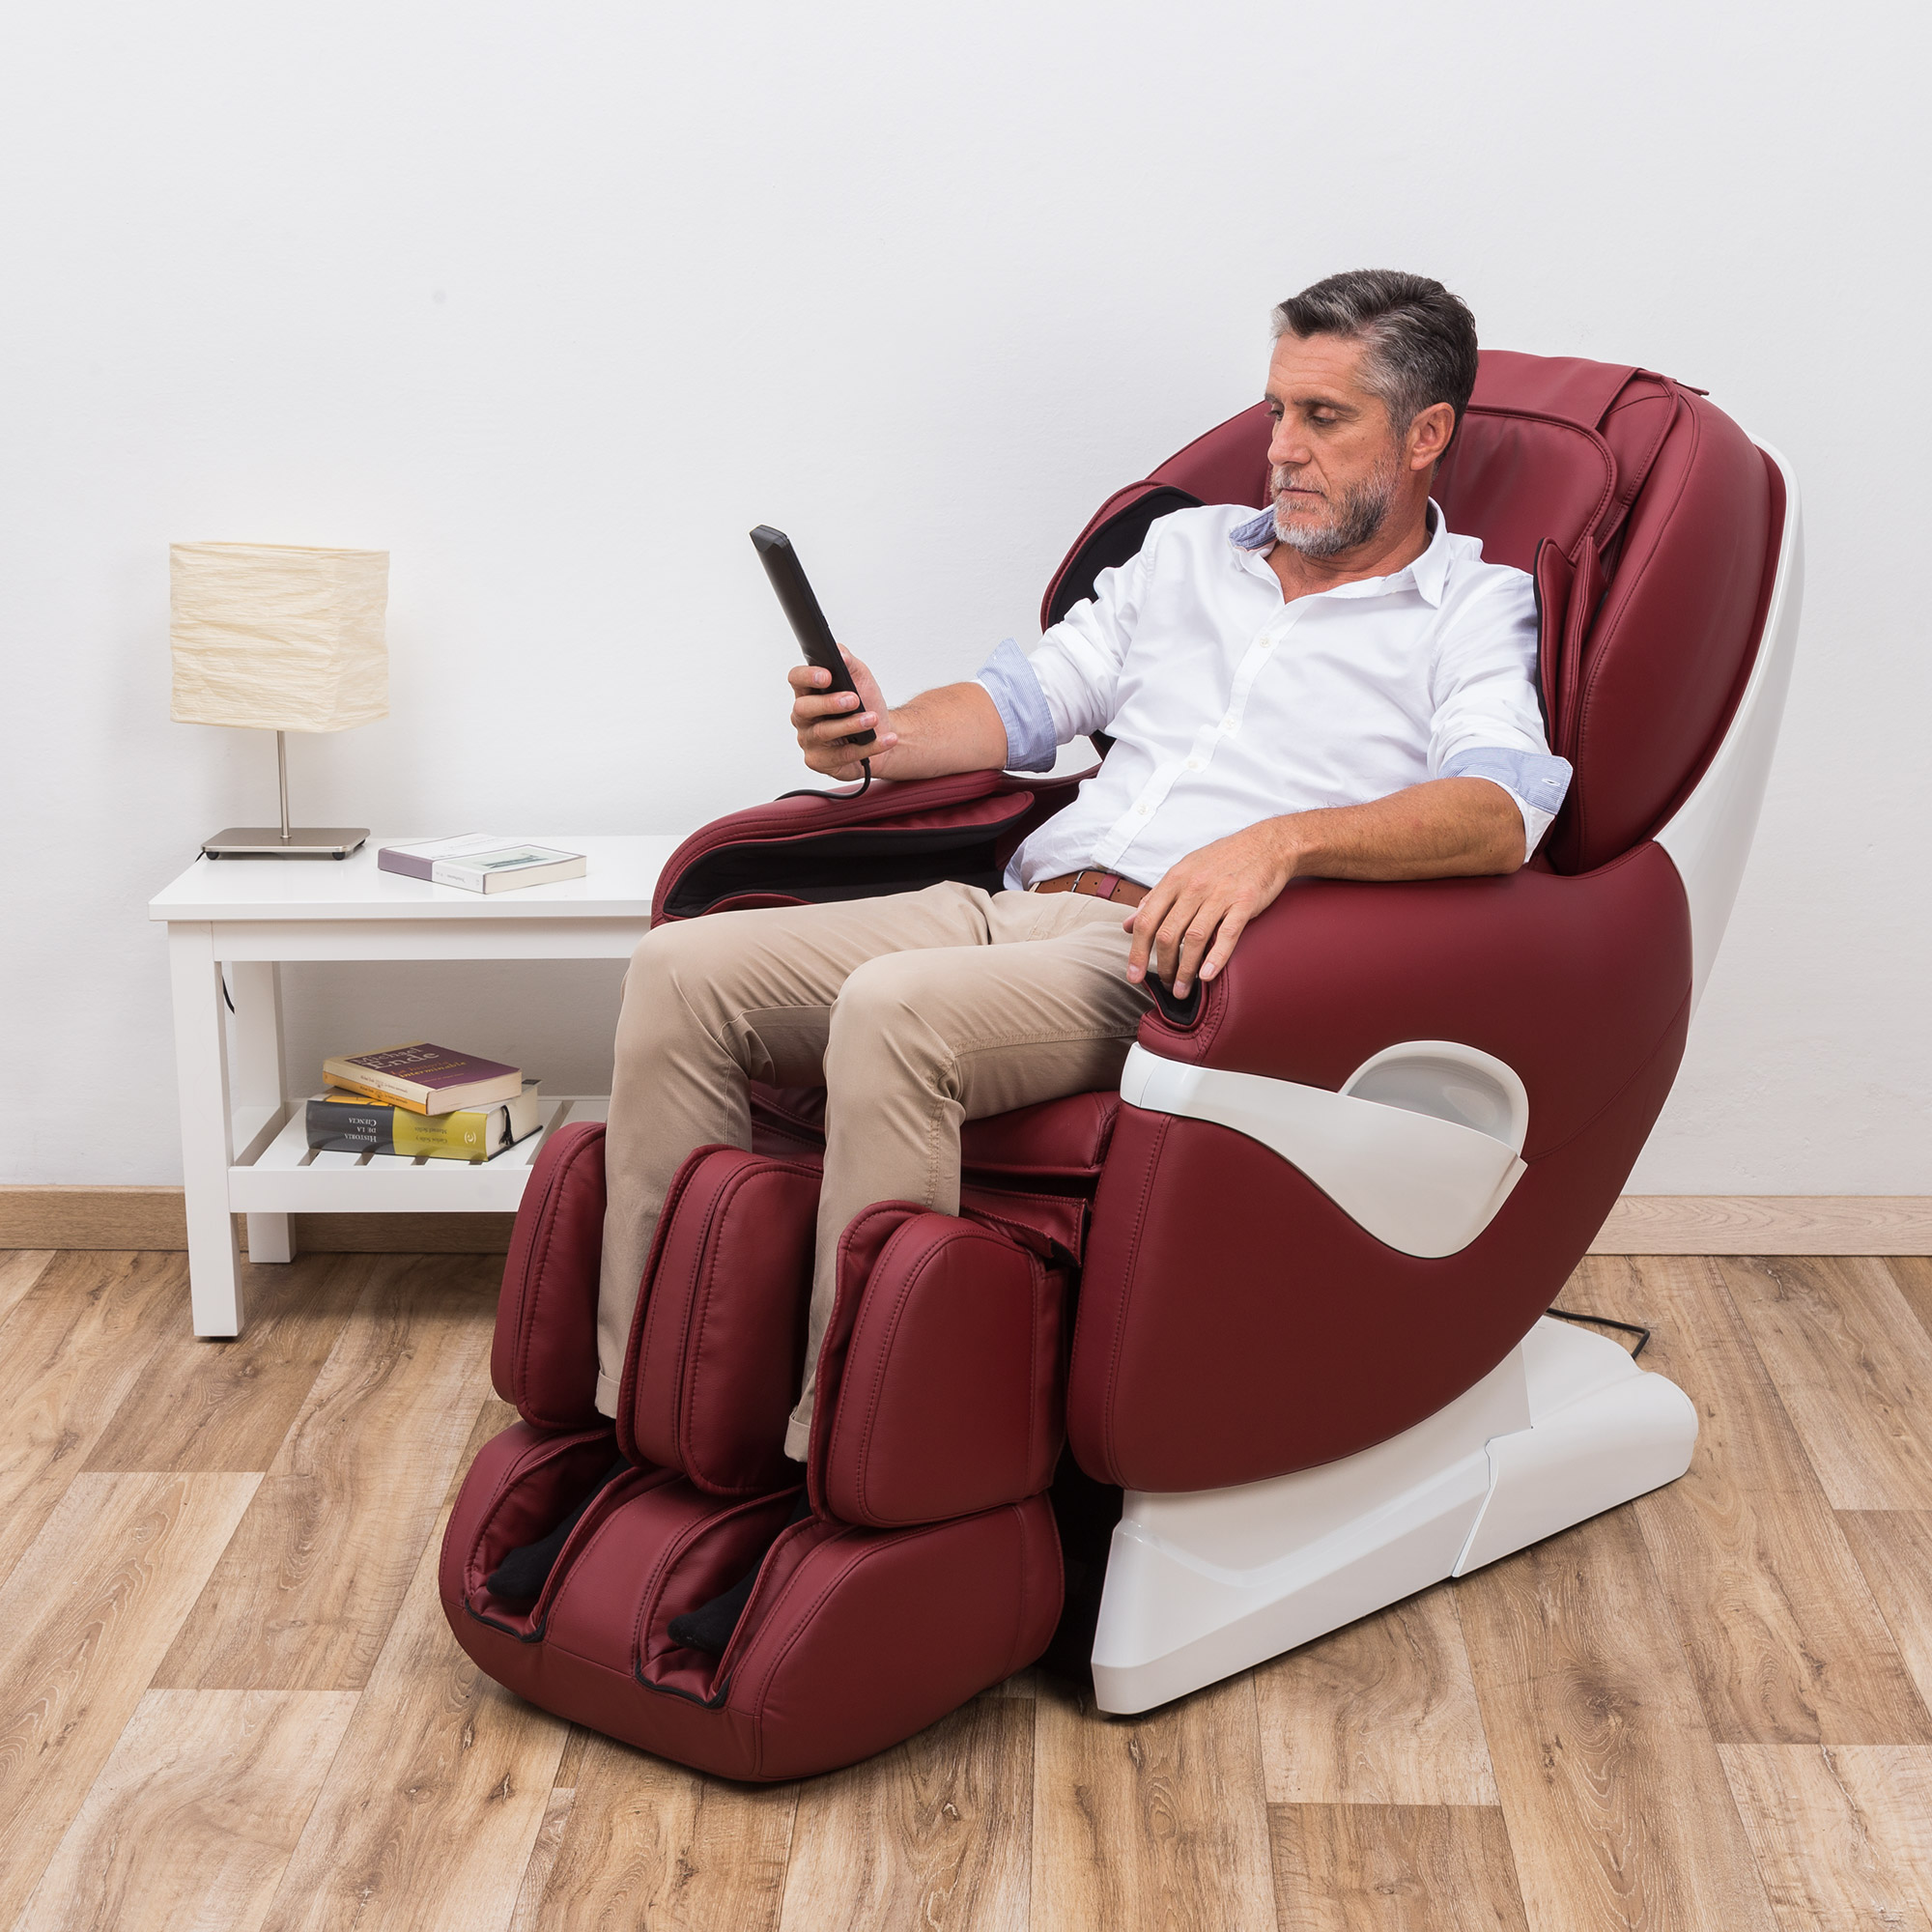 Mismo Optimista ley 7 beneficios de utilizar un sillón de masaje relax